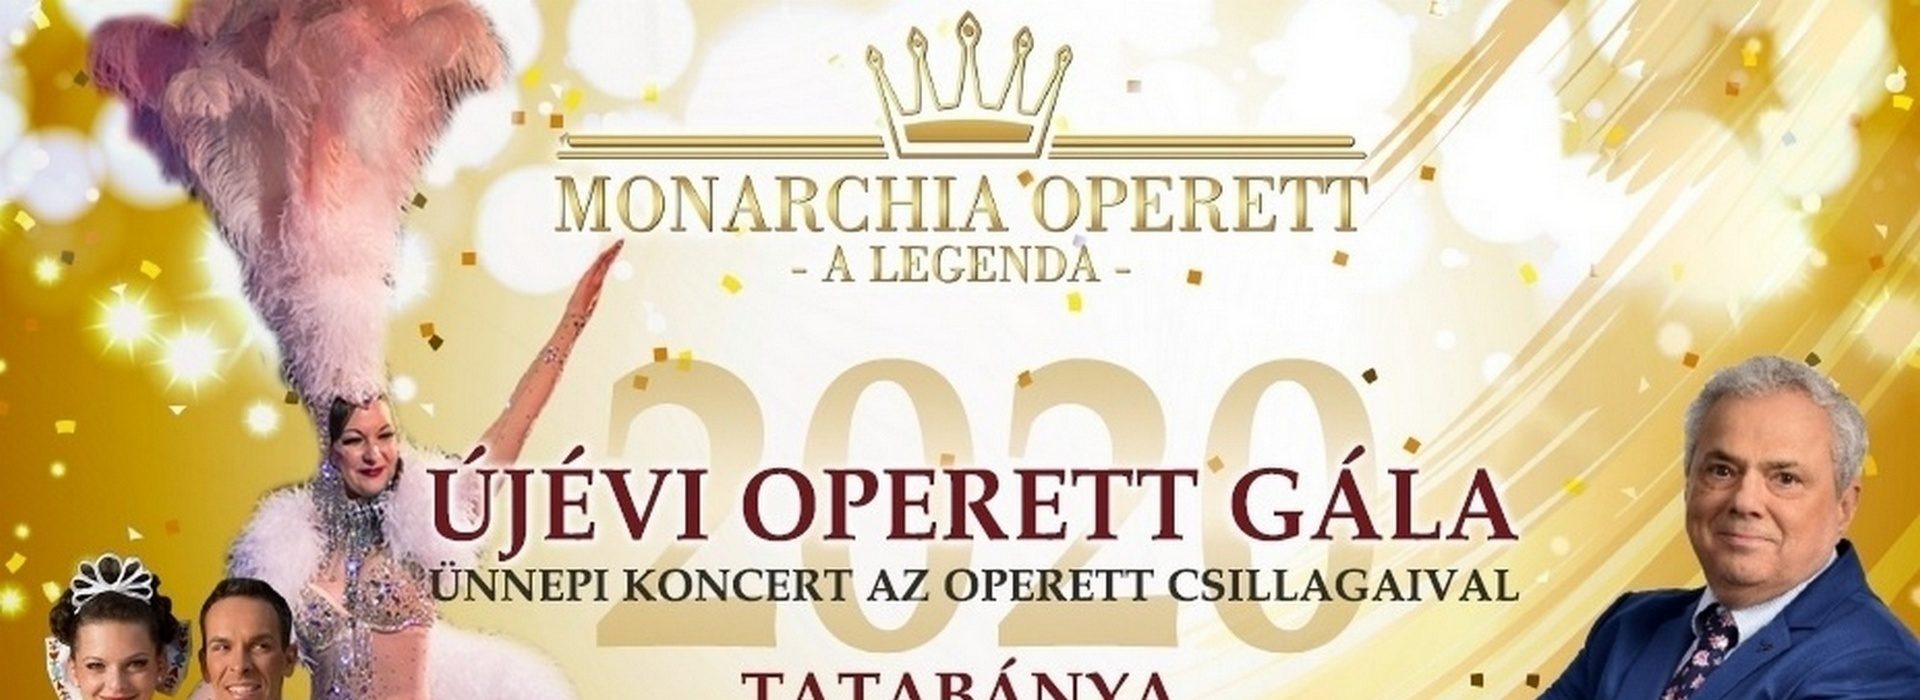 A hagyomány folytatódik Magyarország leglátványosabb operett showjával.